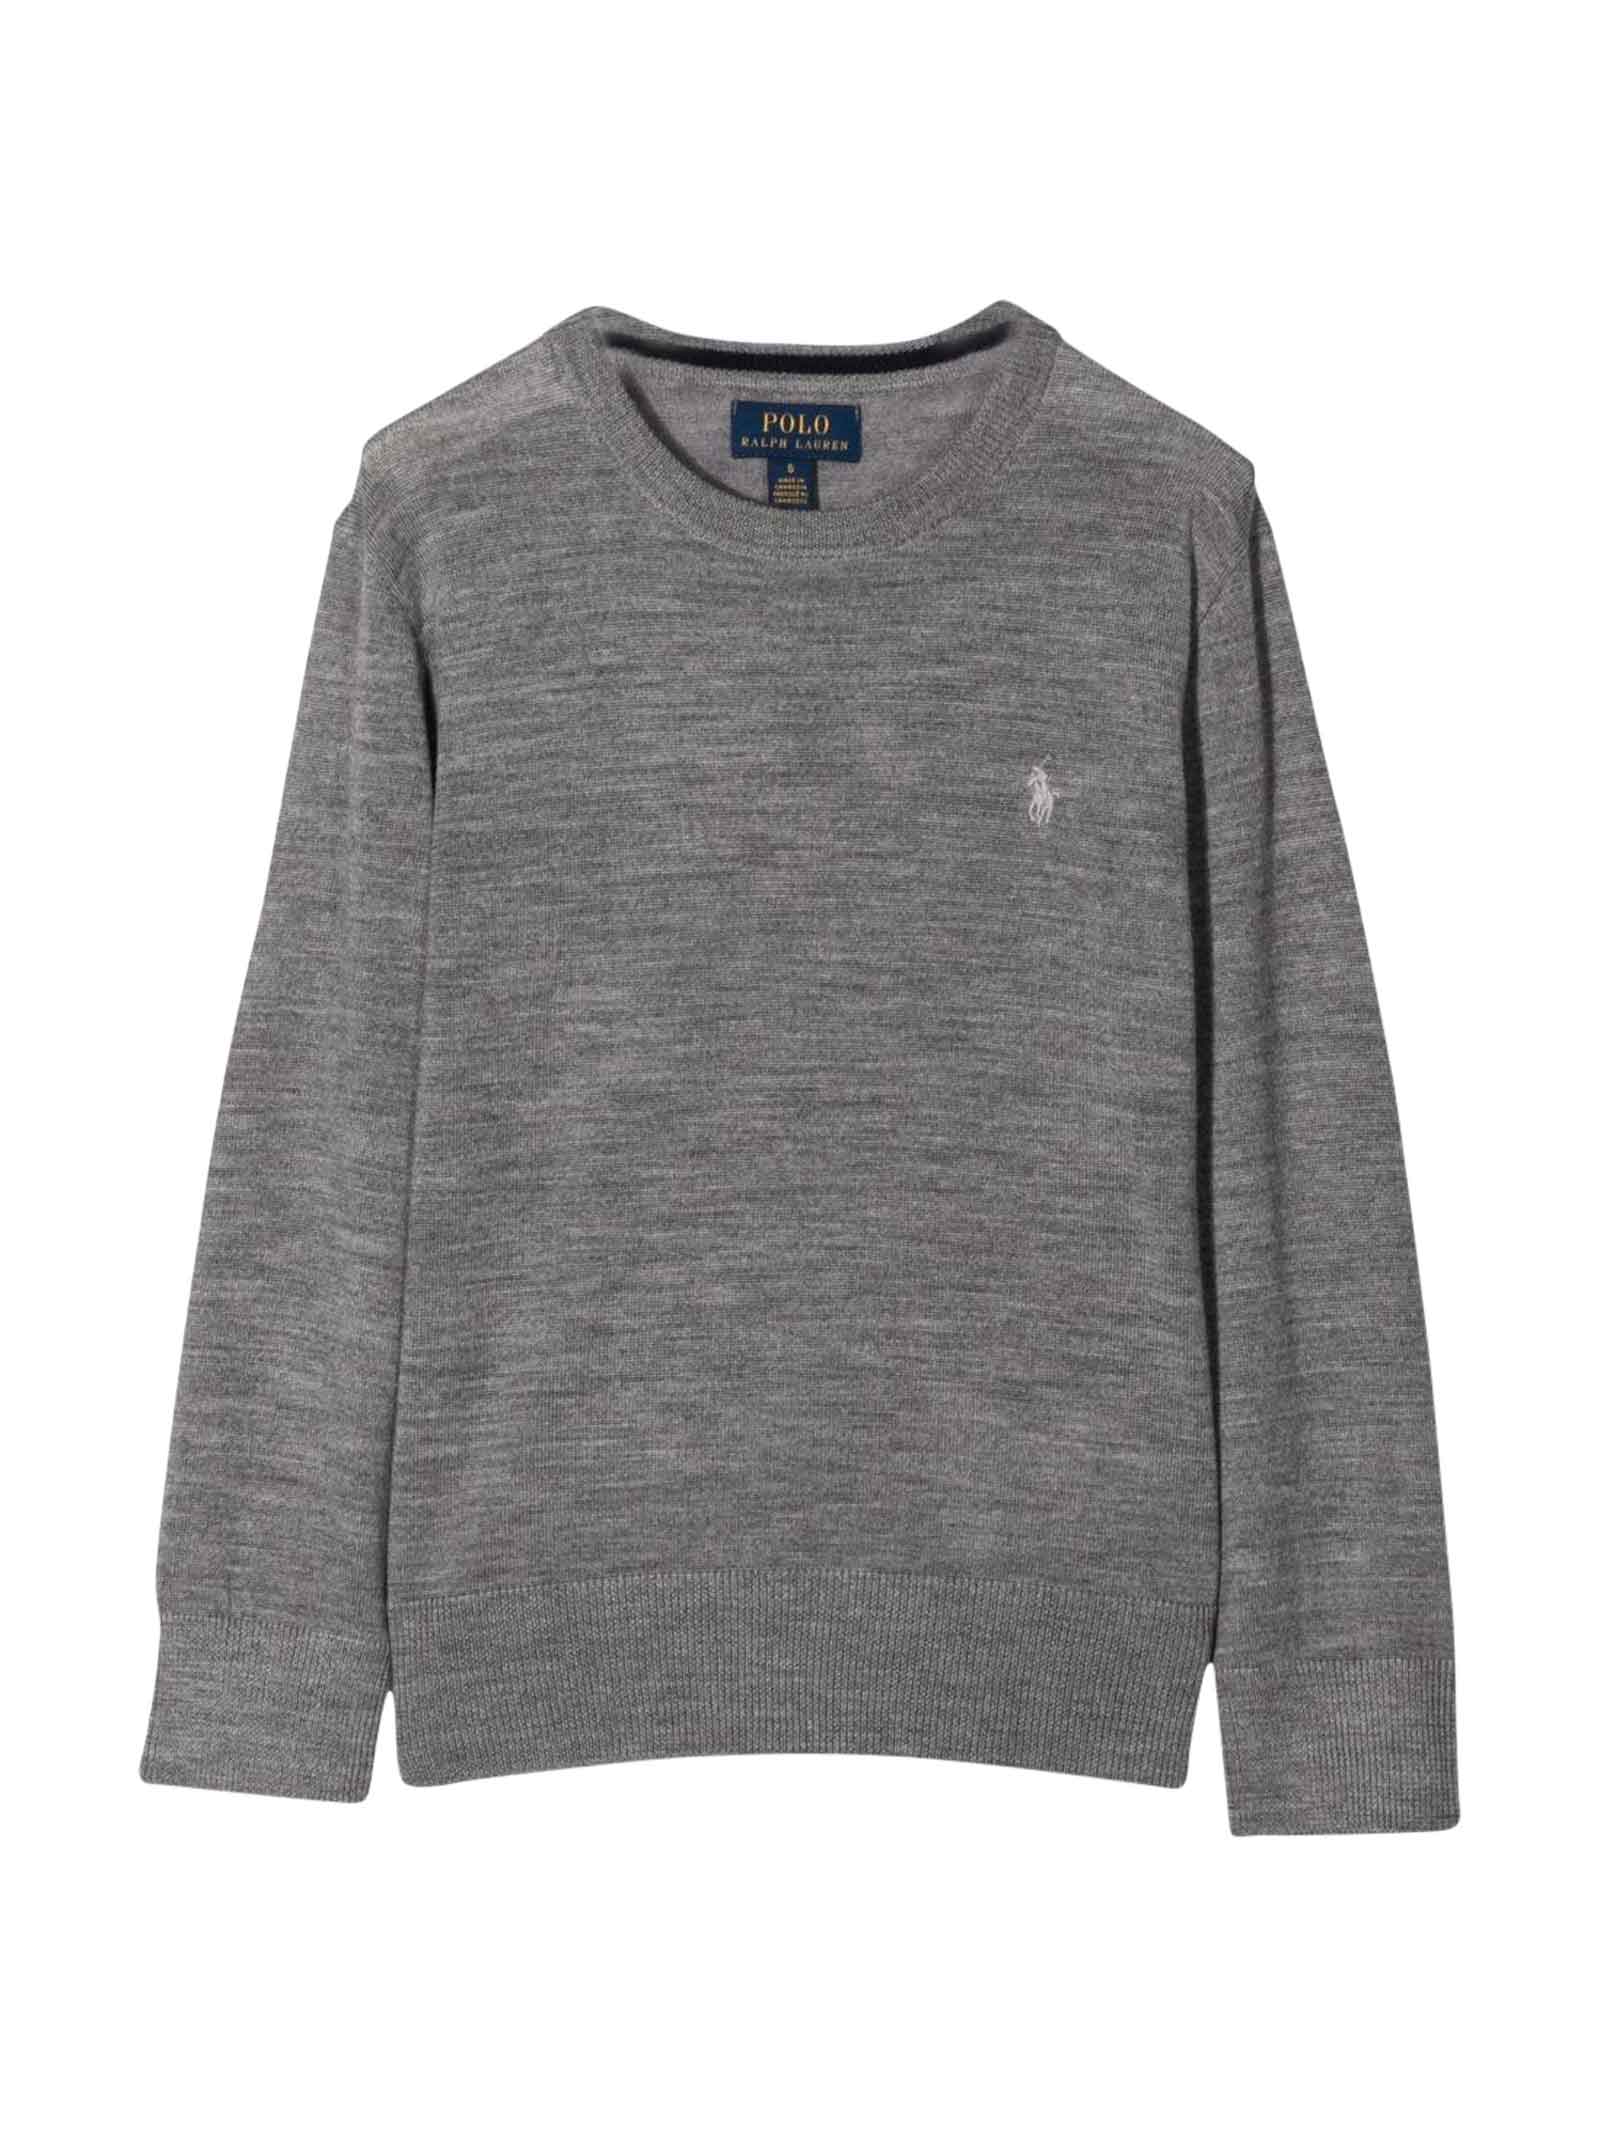 Ralph Lauren Grey Sweatshirt With Logo